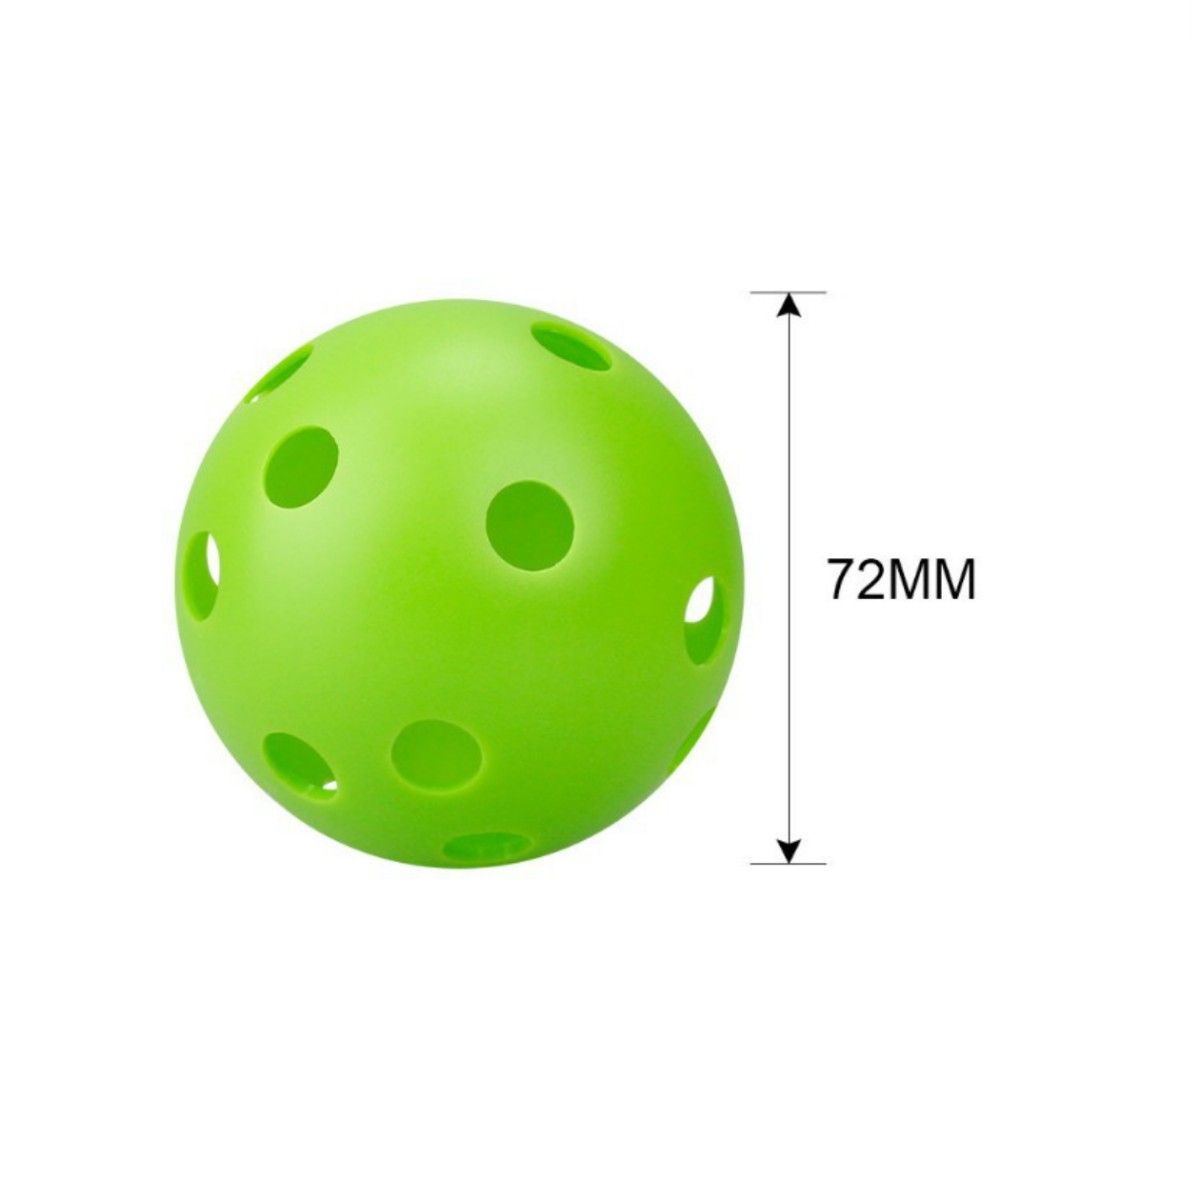 穴あきボール 野球 ソフトボール バッティング練習 軽量 PE素材 プラスチック 72mm 30個セット